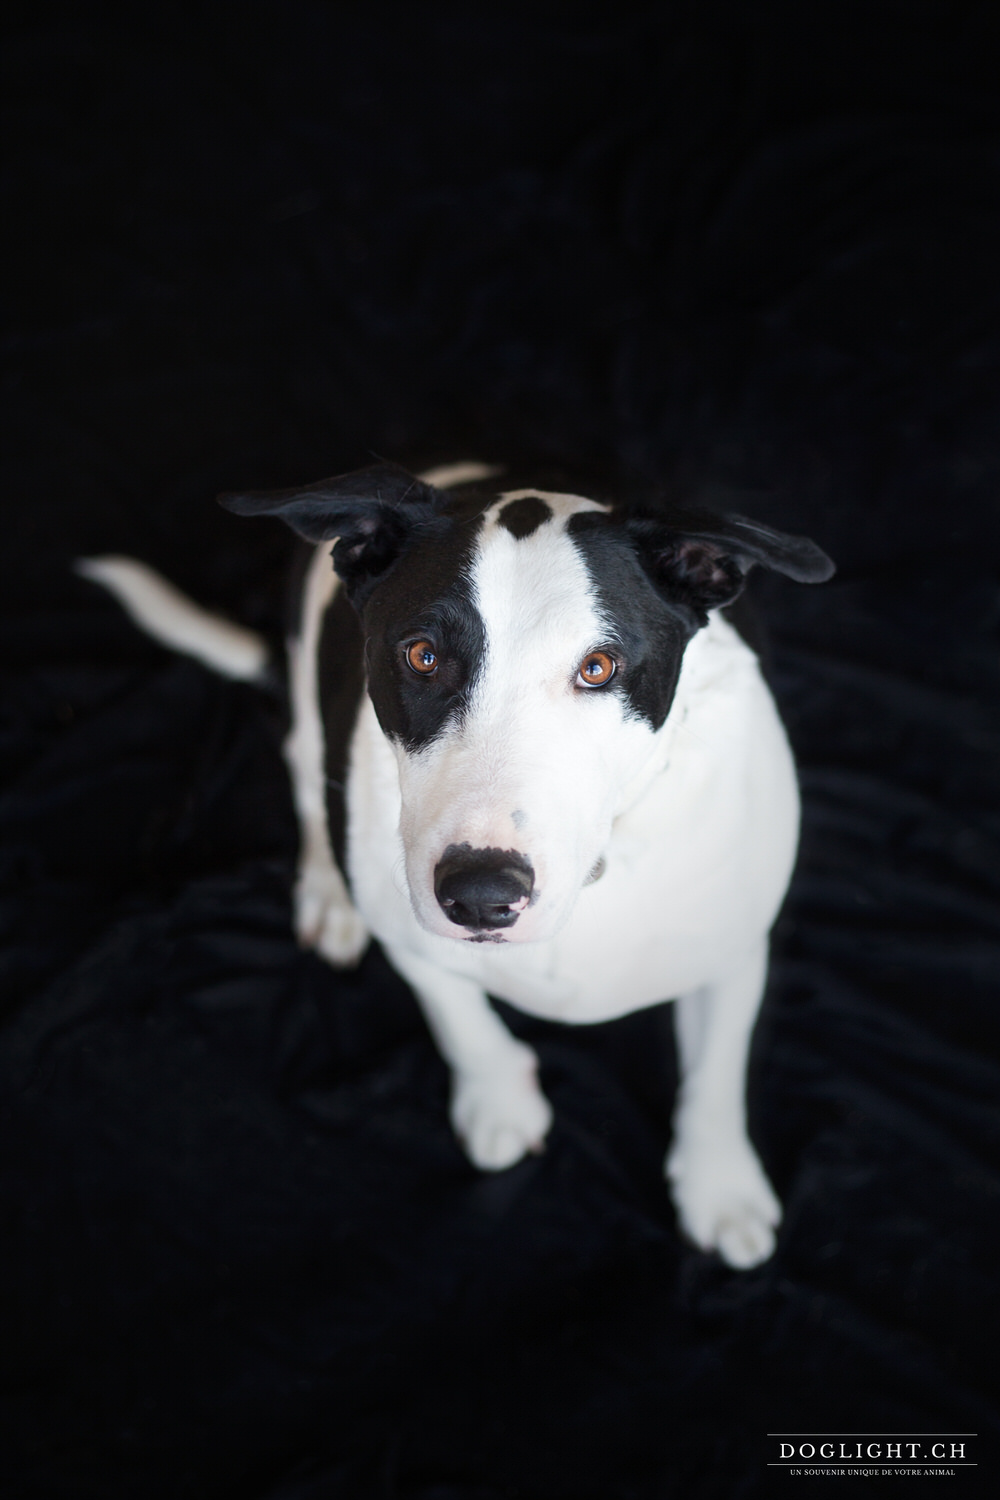 Photo Bull Terrier fond noir photographe